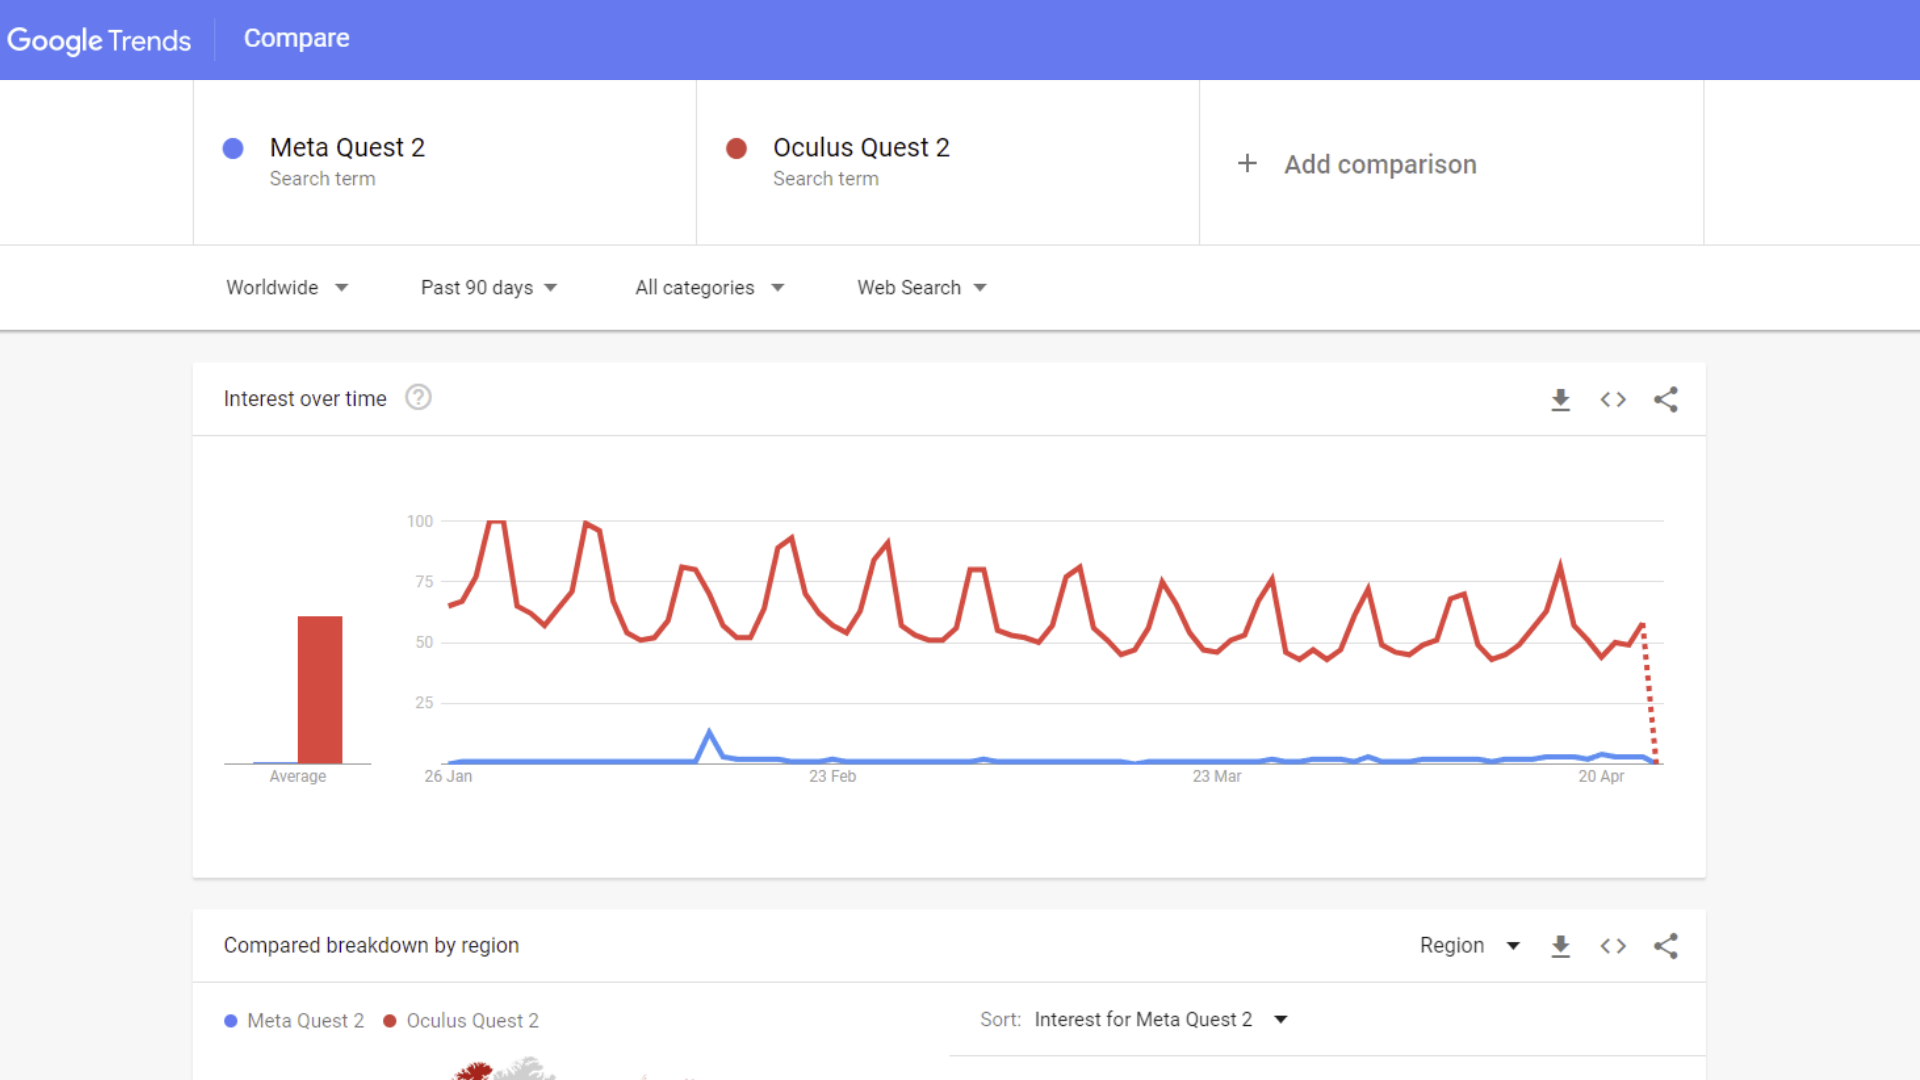 Google trend data comparing Oculus Quest 2 to Meta Quest 2